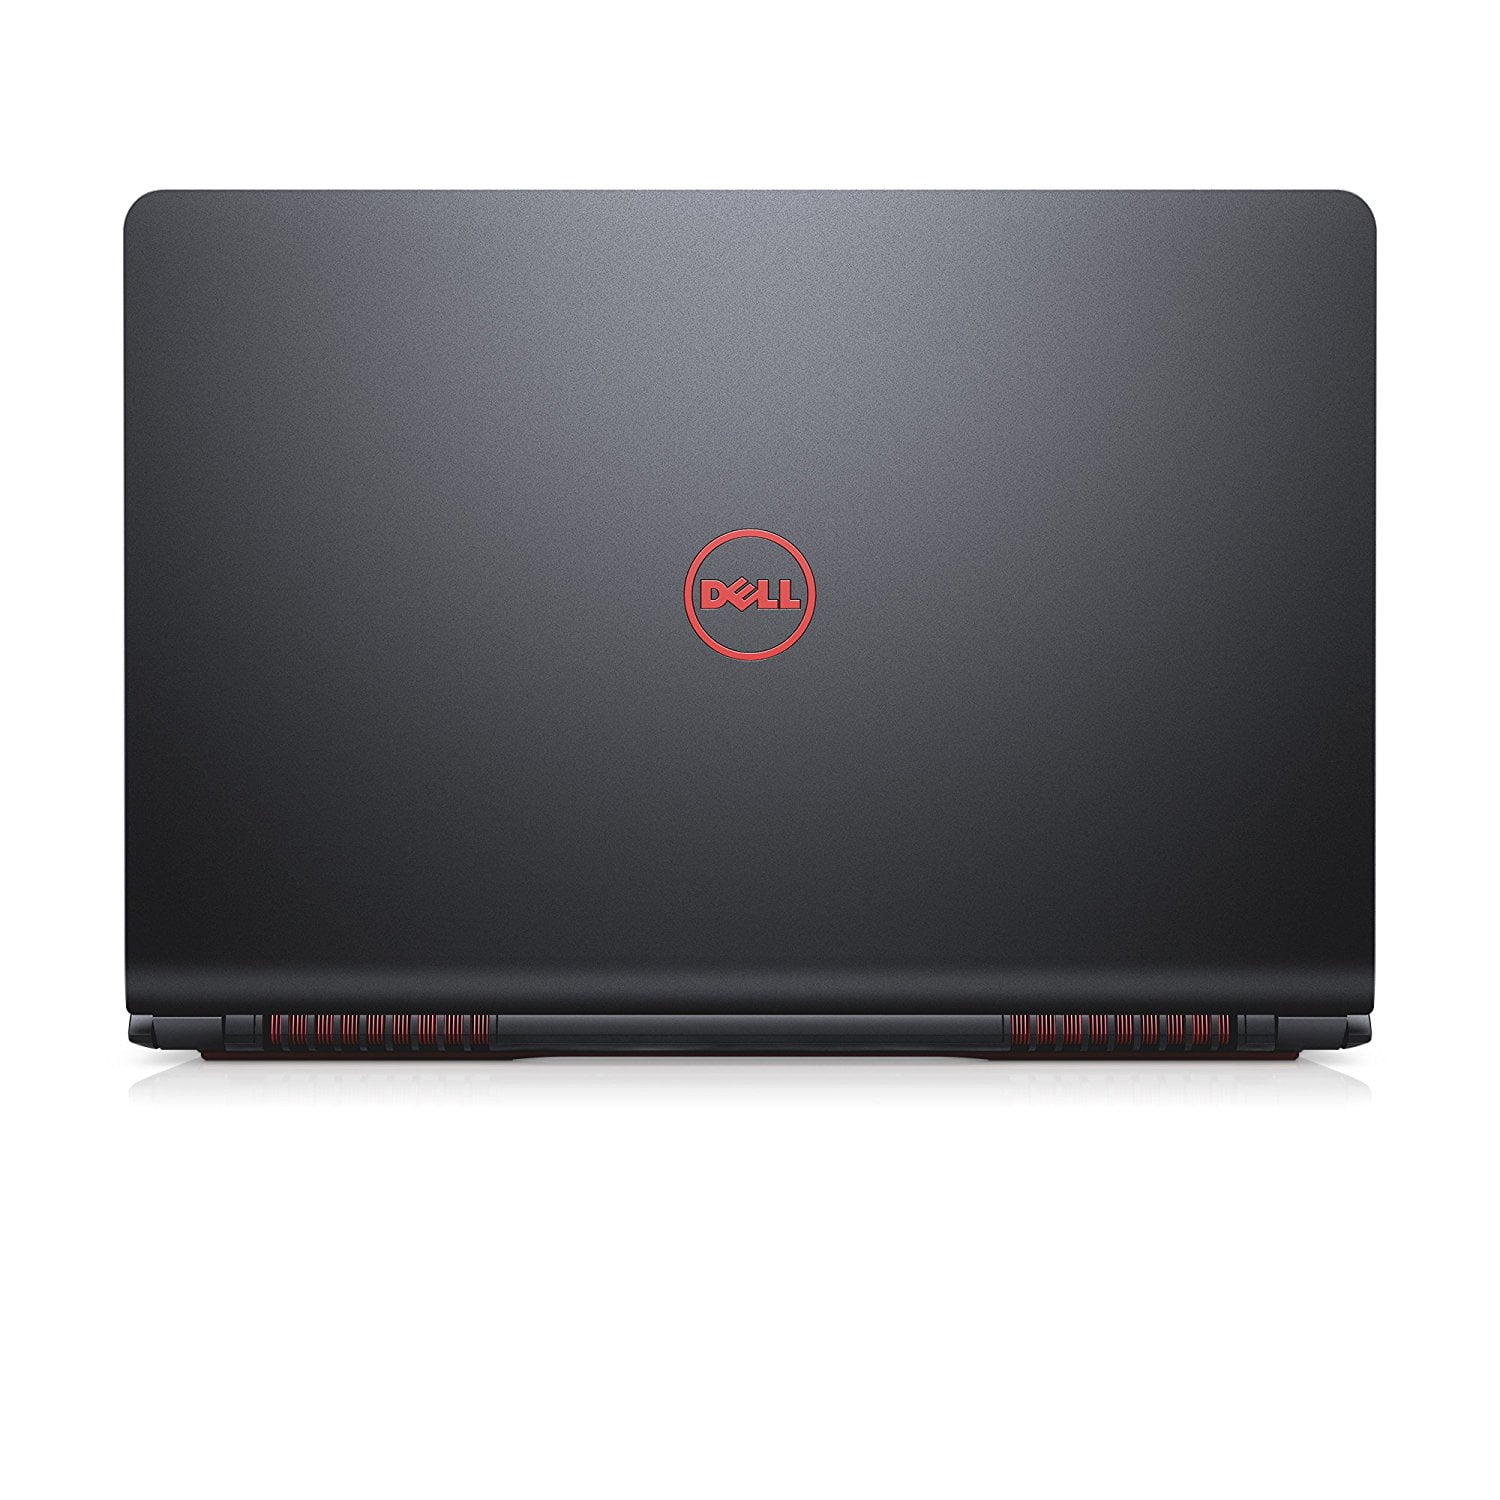 国内即発送】 ショップグリーン インポートDell Inspiron 15 i5577-5858BLK-PUS Gaming Laptop Intel  Core i5-7300HQ